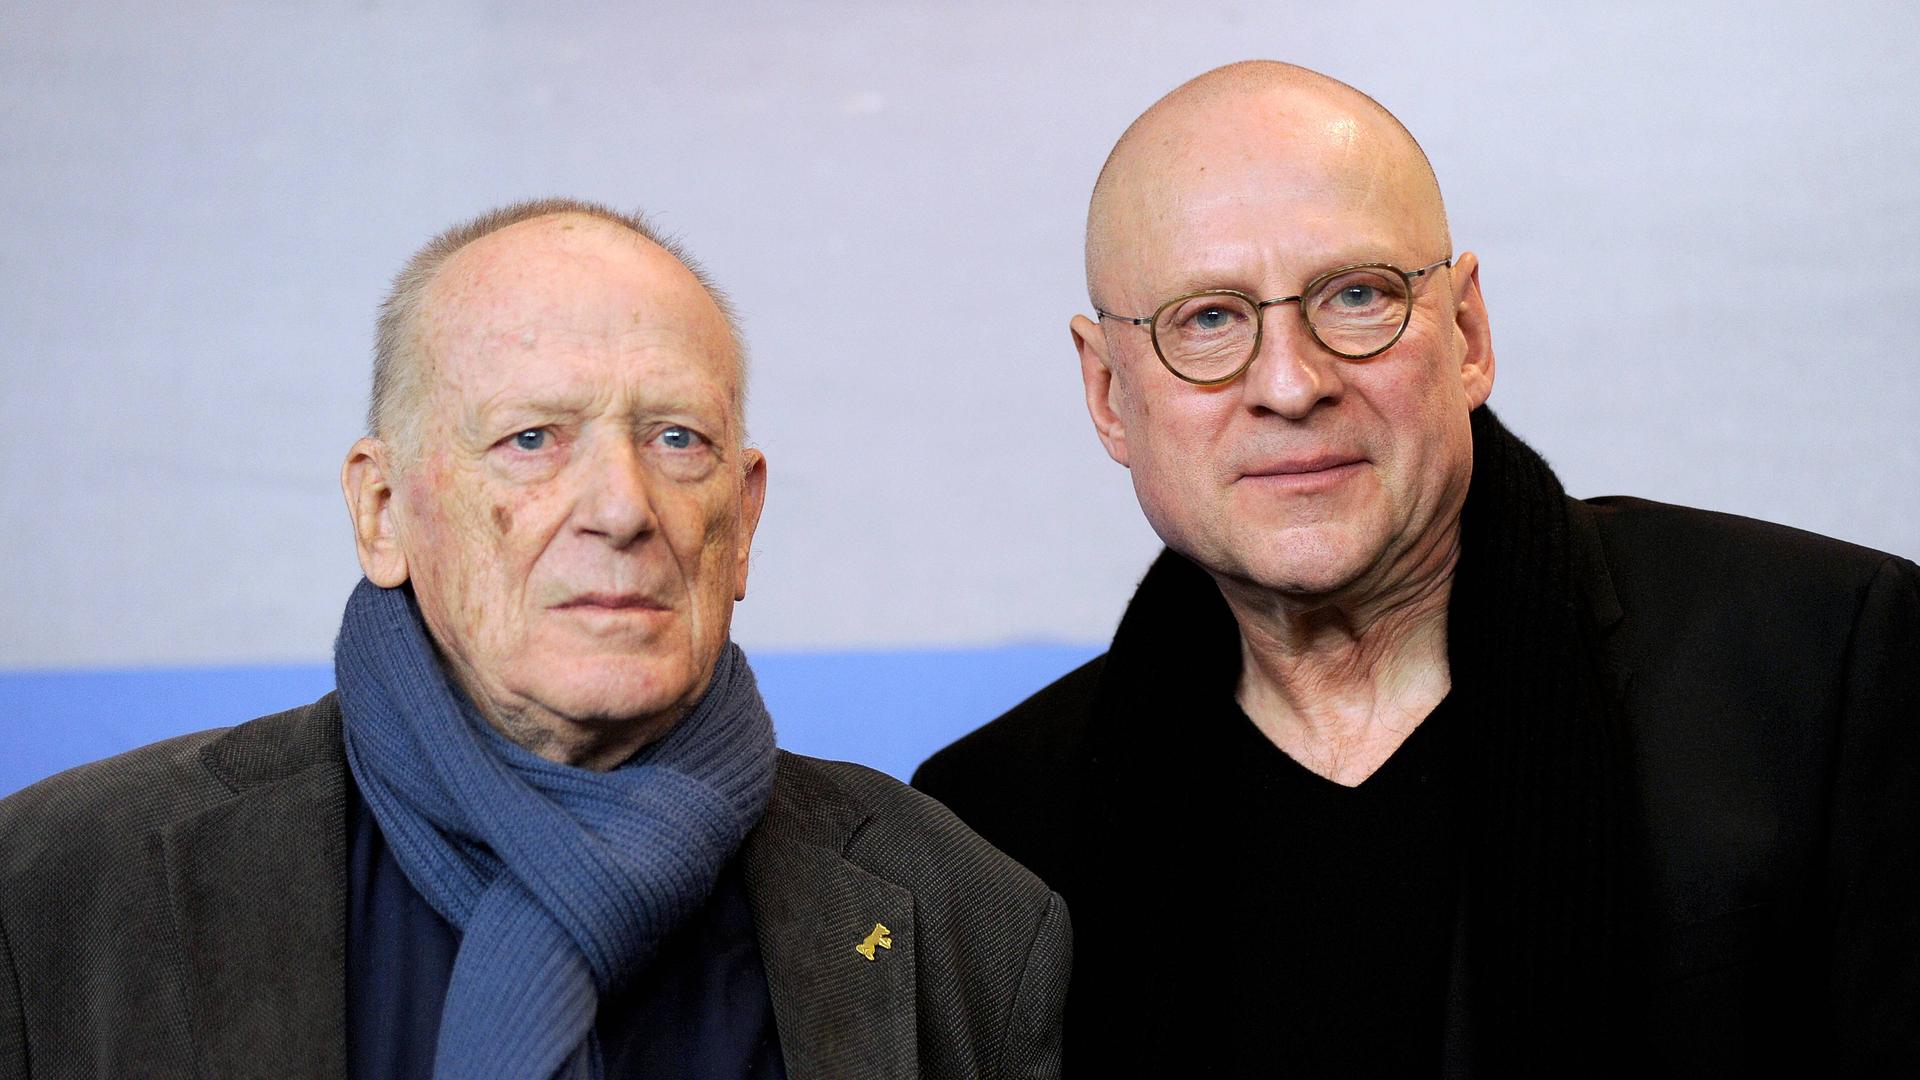 Drehbuchautor Wolfgang Kohlhaase (li.) und Regisseur Matti Geschonneck blicken in die Kamera